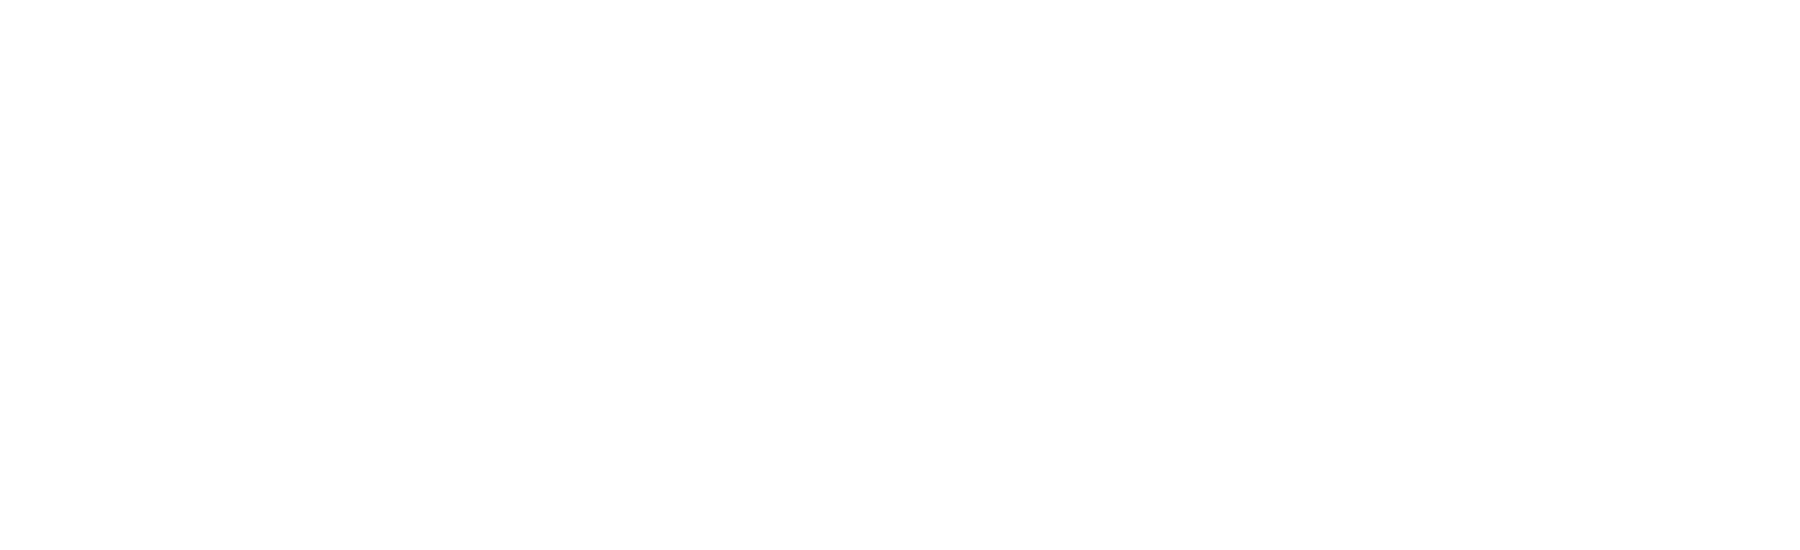 The Beverley Allitt Tapes 